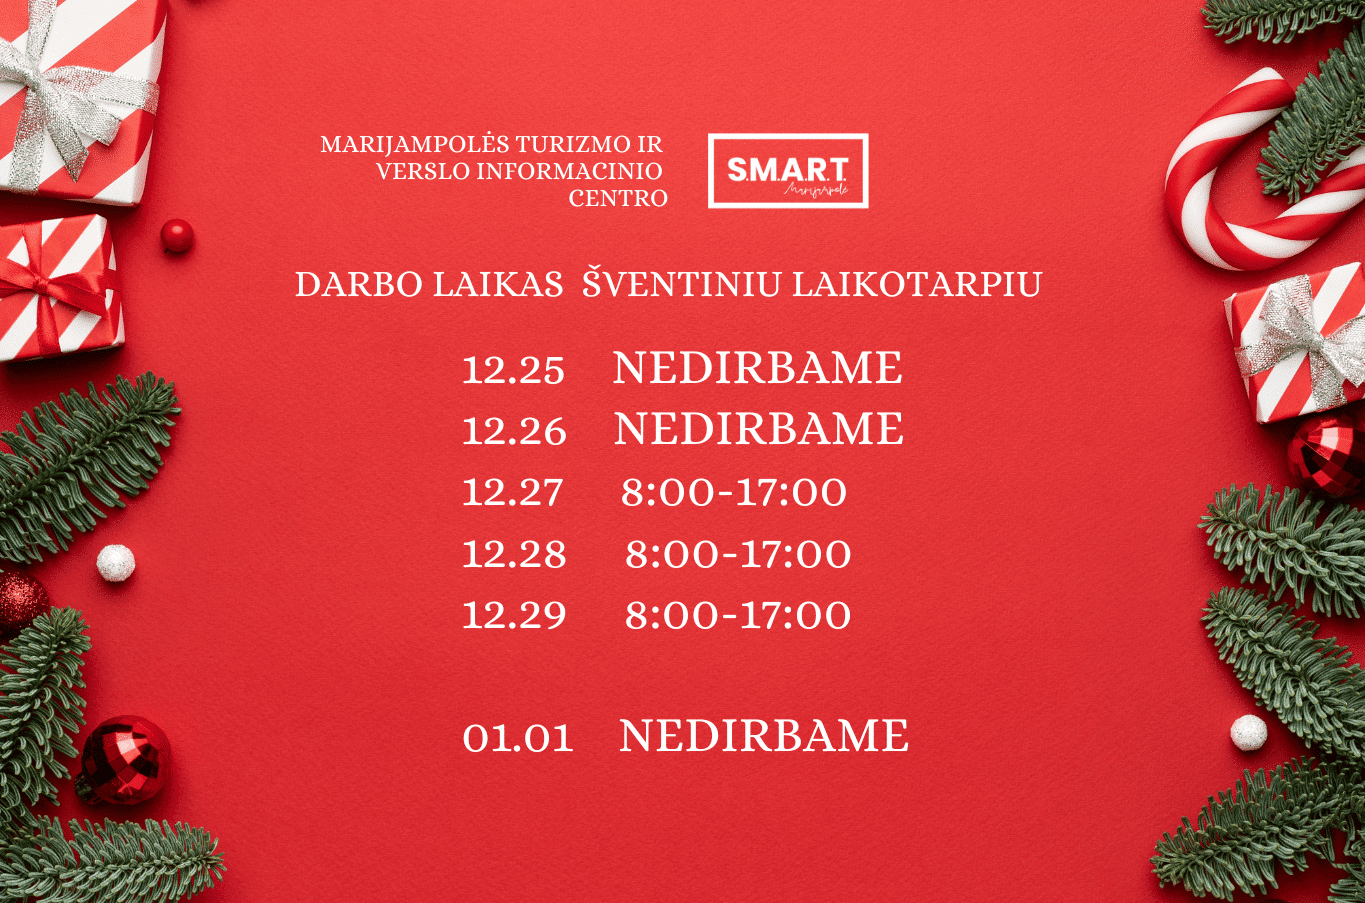 You are currently viewing Marijampolės turizmo ir verslo informacinio centro „SMART Marijampolė“ darbo laikas šventiniu laikotarpiu!